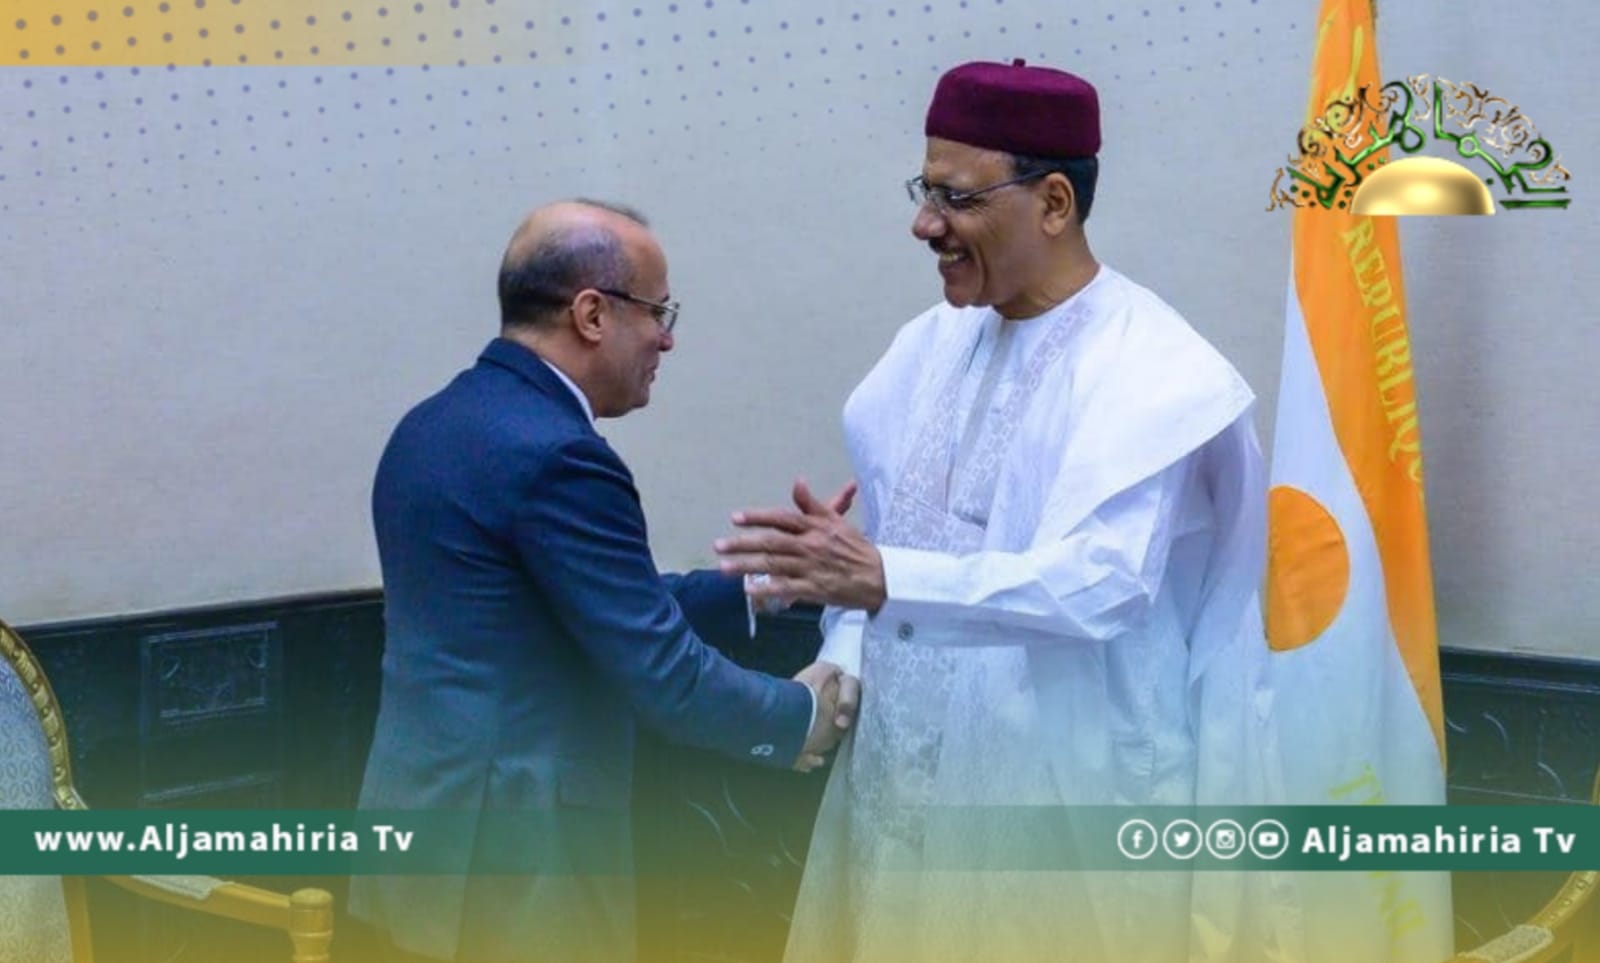 اللافي يبحث مع رئيس النيجر سبل تعزيز التعاون وإعادة إحياء تجمع الساحل والصحراء